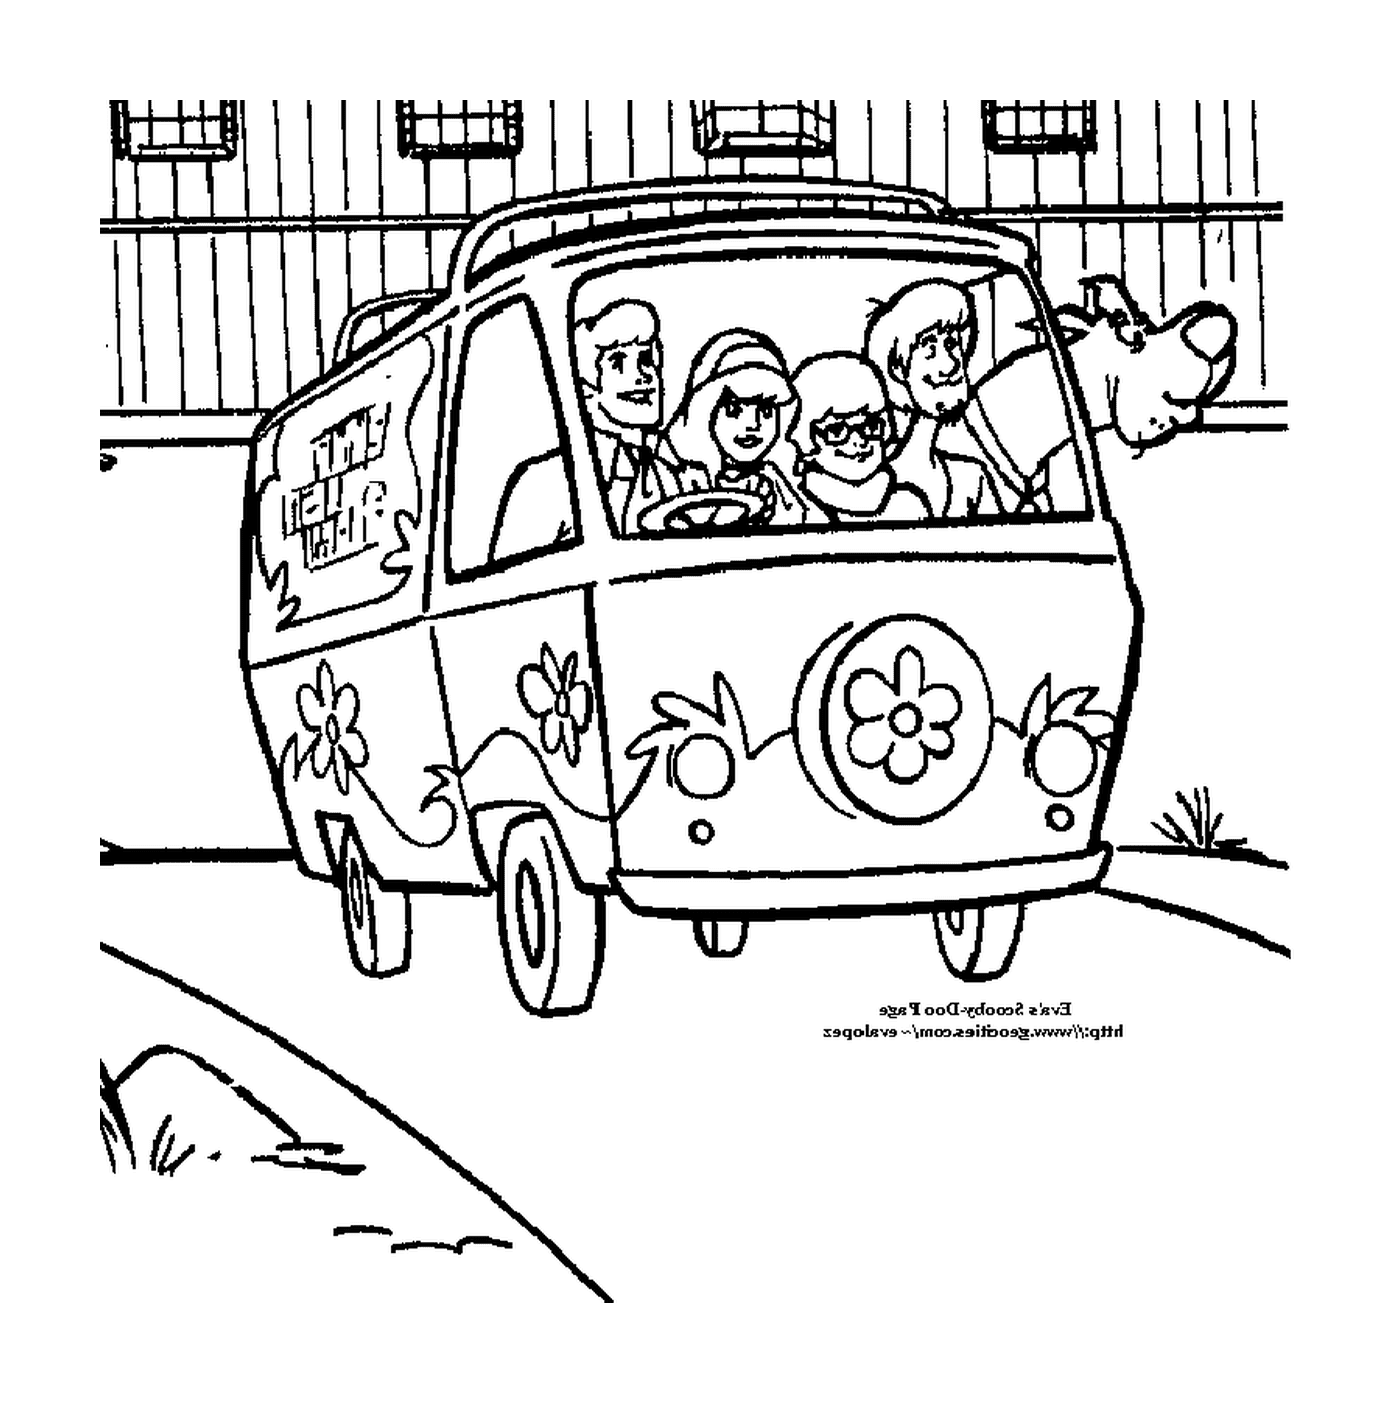  Ein Van mit Leuten im Inneren 